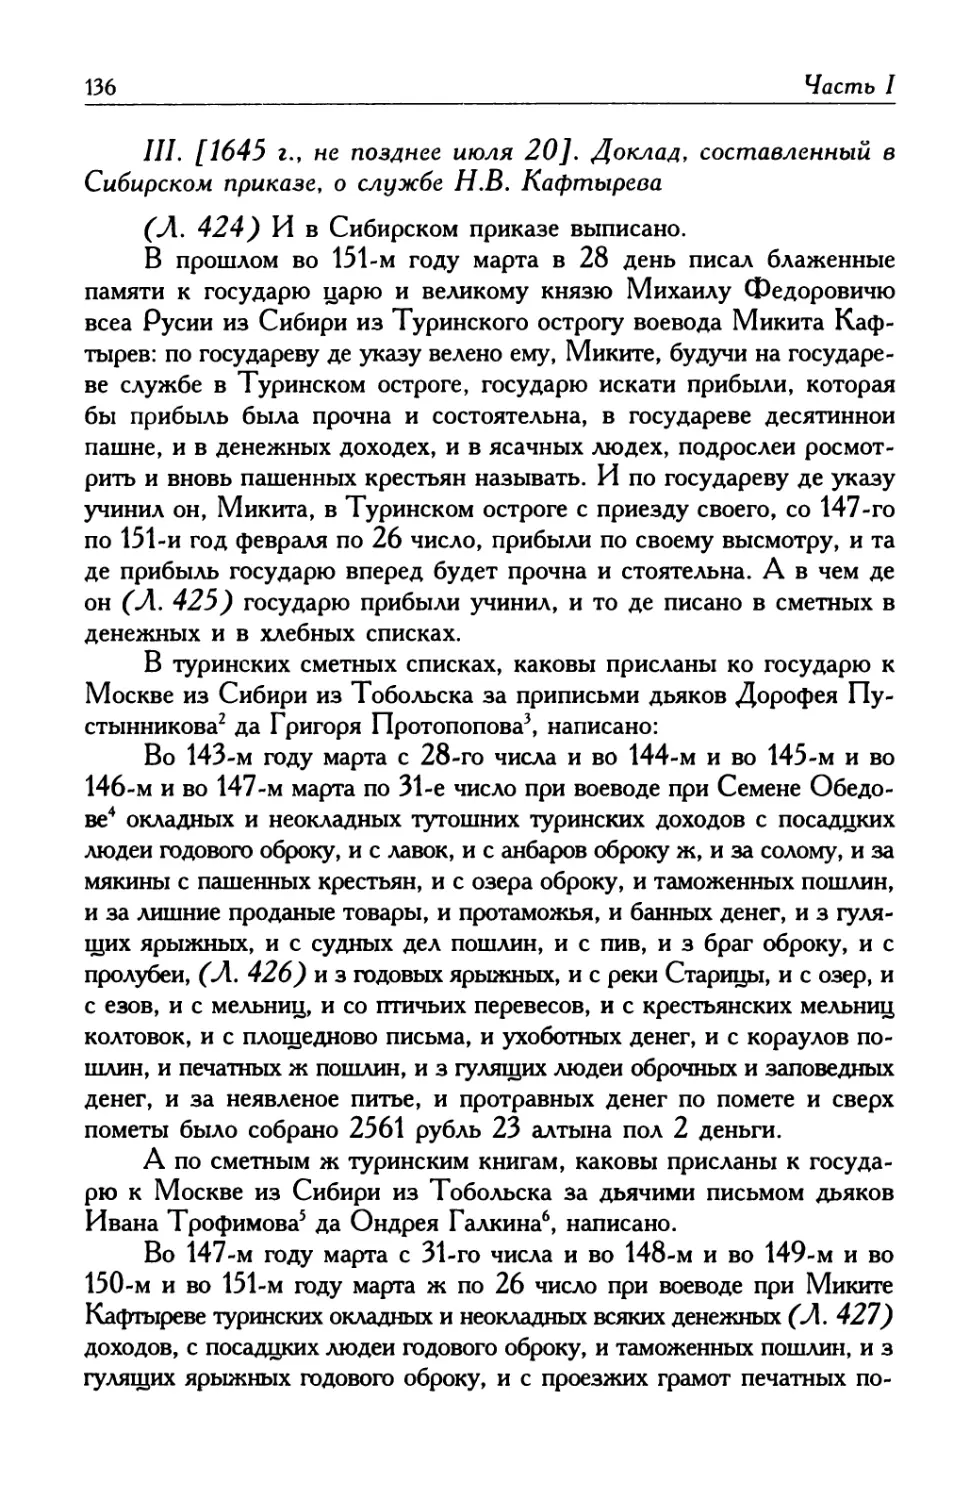 III. [1645 г., не позднее июля 20]. Доклад, составленный в Сибирском приказе, о службе Н. В. Кафтырева